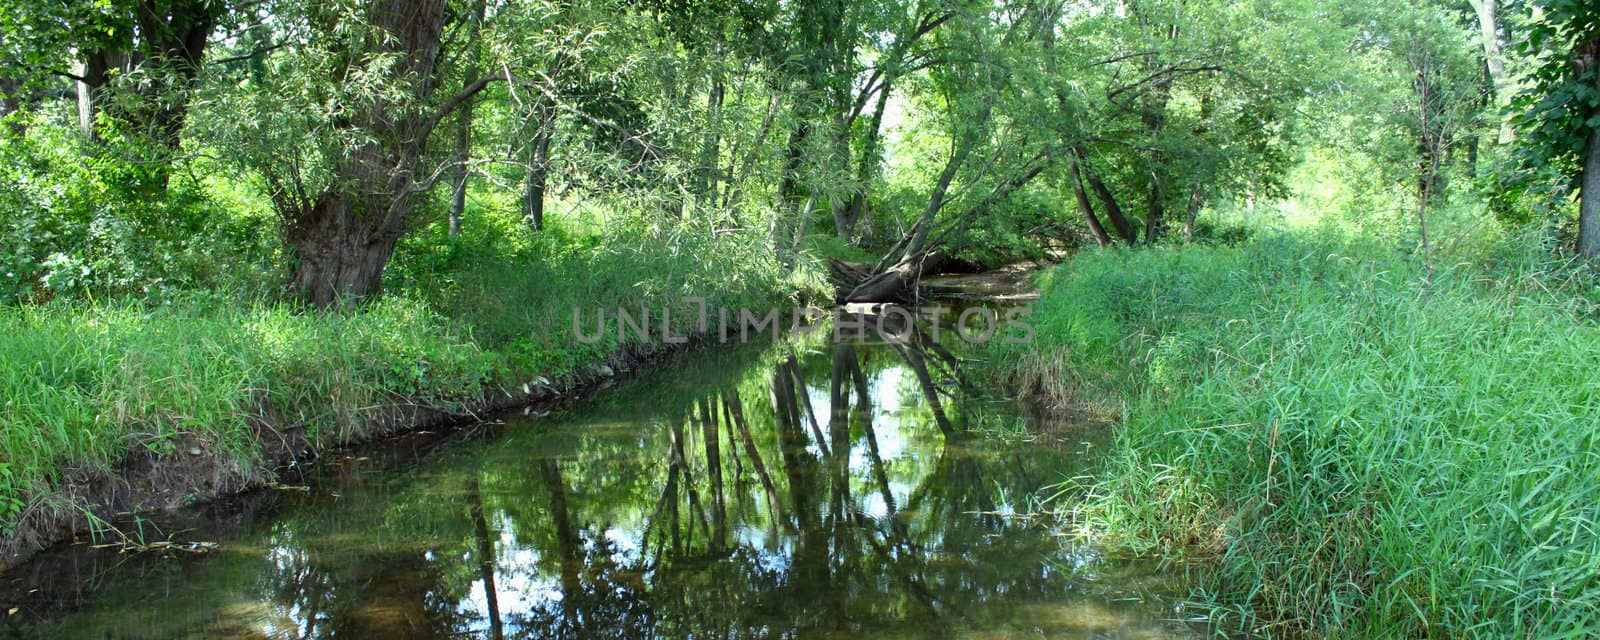 Pretty creek scene in Illinois by Wirepec